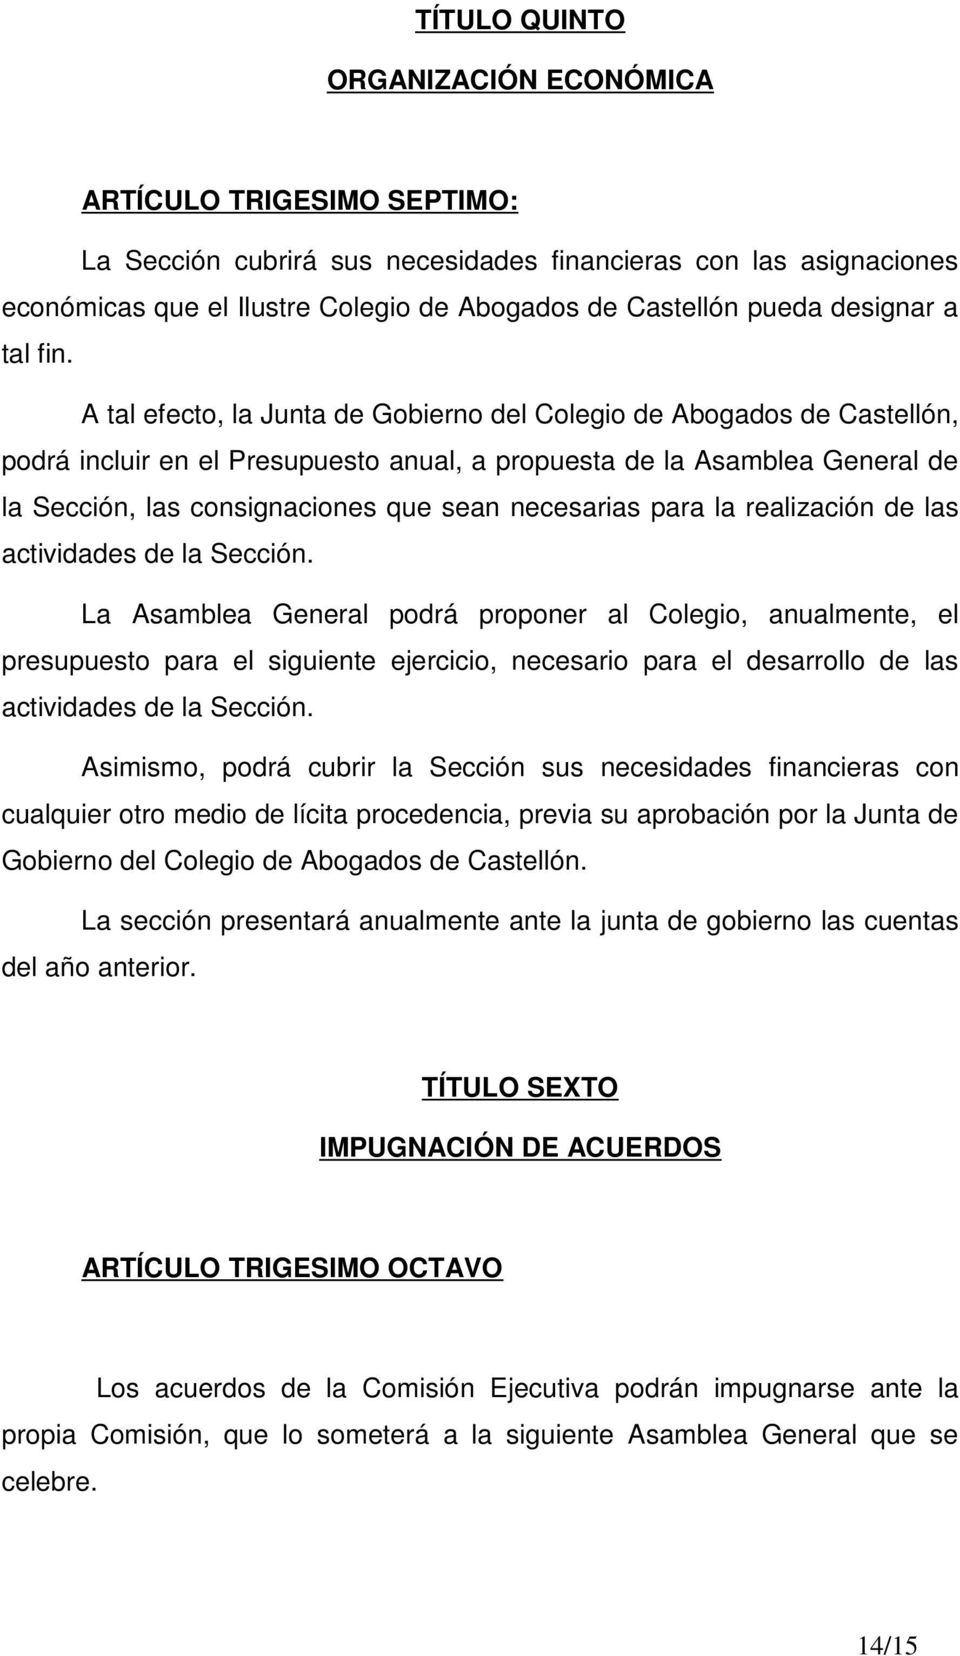 A tal efecto, la Junta de Gobierno del Colegio de Abogados de Castellón, podrá incluir en el Presupuesto anual, a propuesta de la Asamblea General de la Sección, las consignaciones que sean